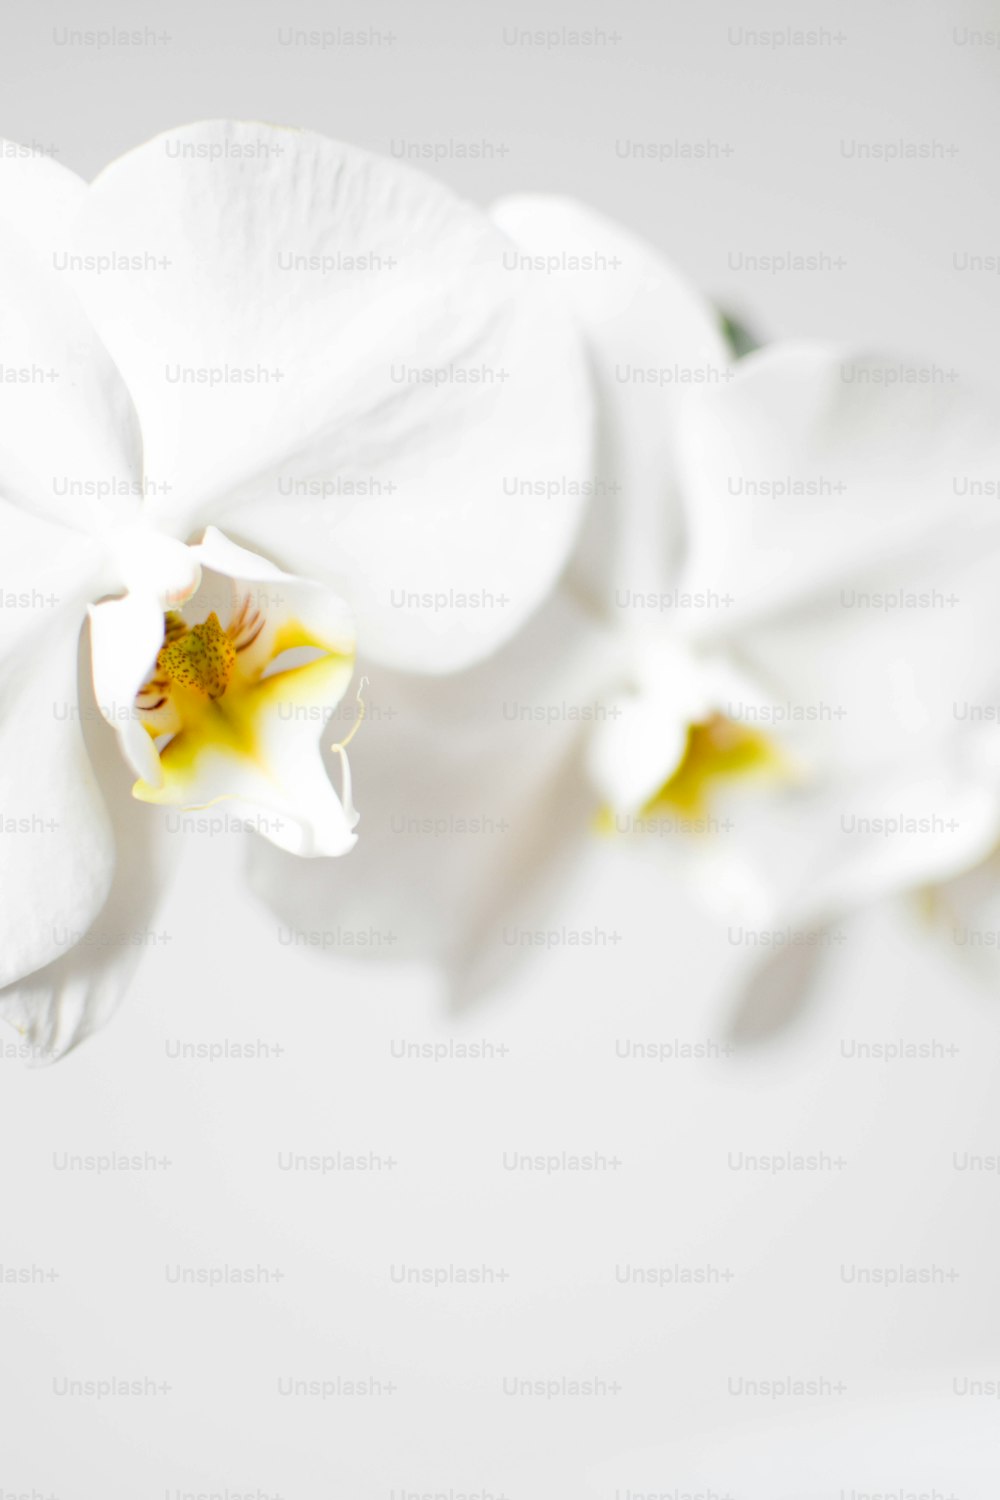 Un primer plano de una flor blanca sobre un fondo blanco